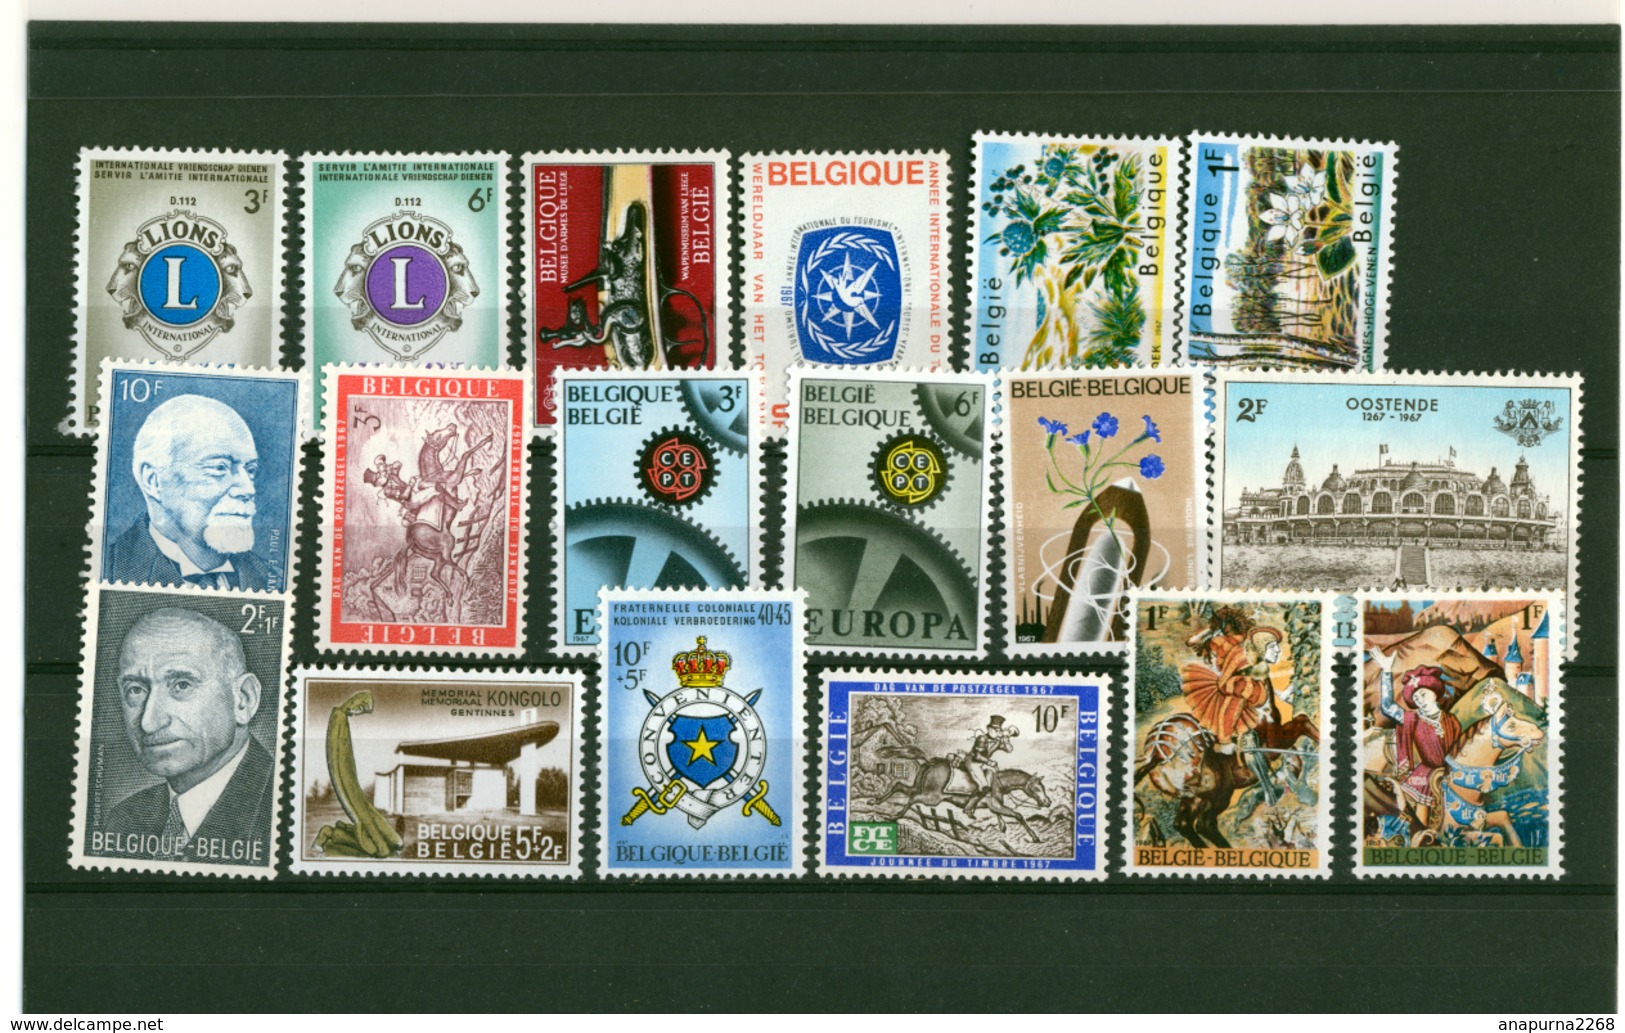 BELGIQUE   1967  ANNÉE COMPLÈTE + FEUILLETS ÉMIS PAR LA POSTE + ENVELOPPE PREMIER JOUR TOURISME - Unused Stamps